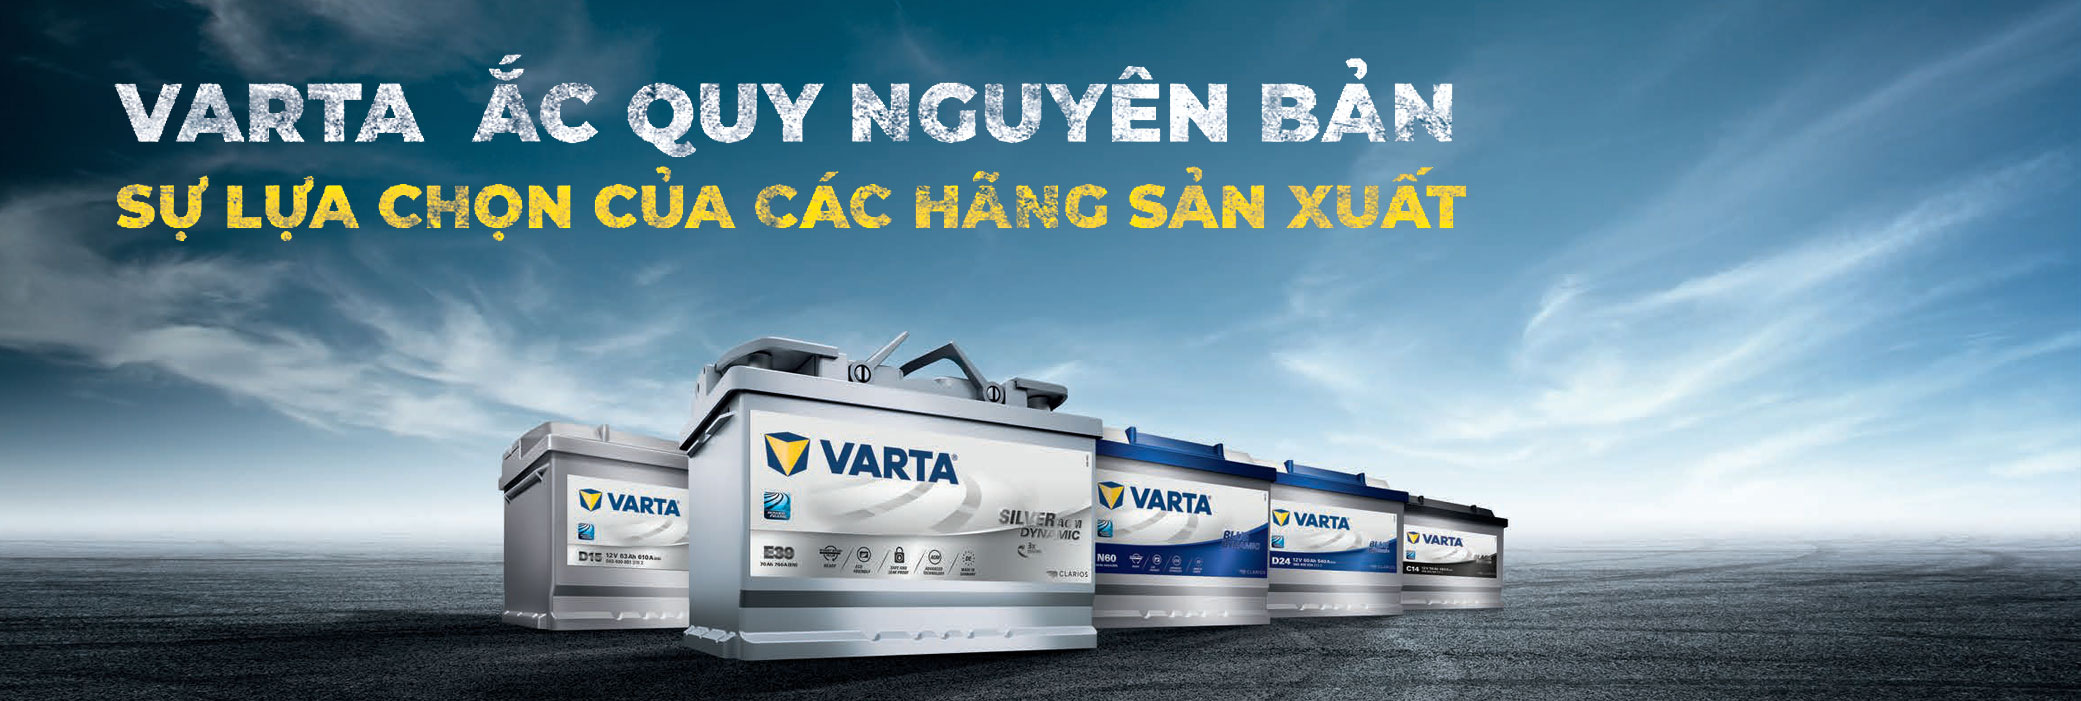 VARTA - Thương hiệu nhập khẩu Korea